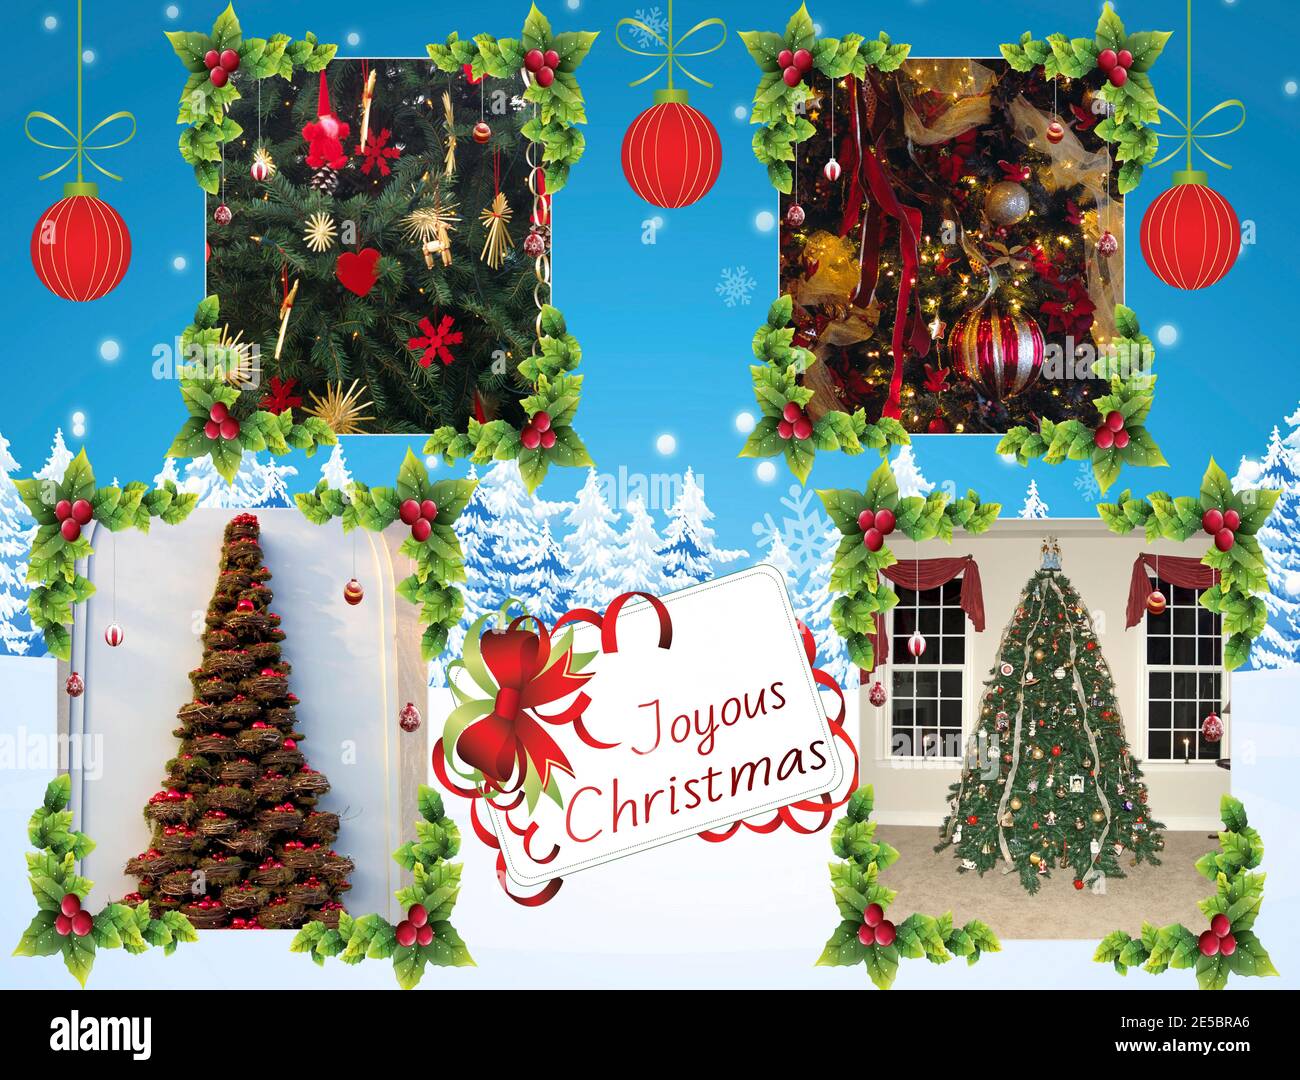 Collage de Navidad, 4 árboles decorados, luces, fotos, vacaciones, estacional, colorido, ornamentos, alegre texto de Navidad, palabras, PR Foto de stock